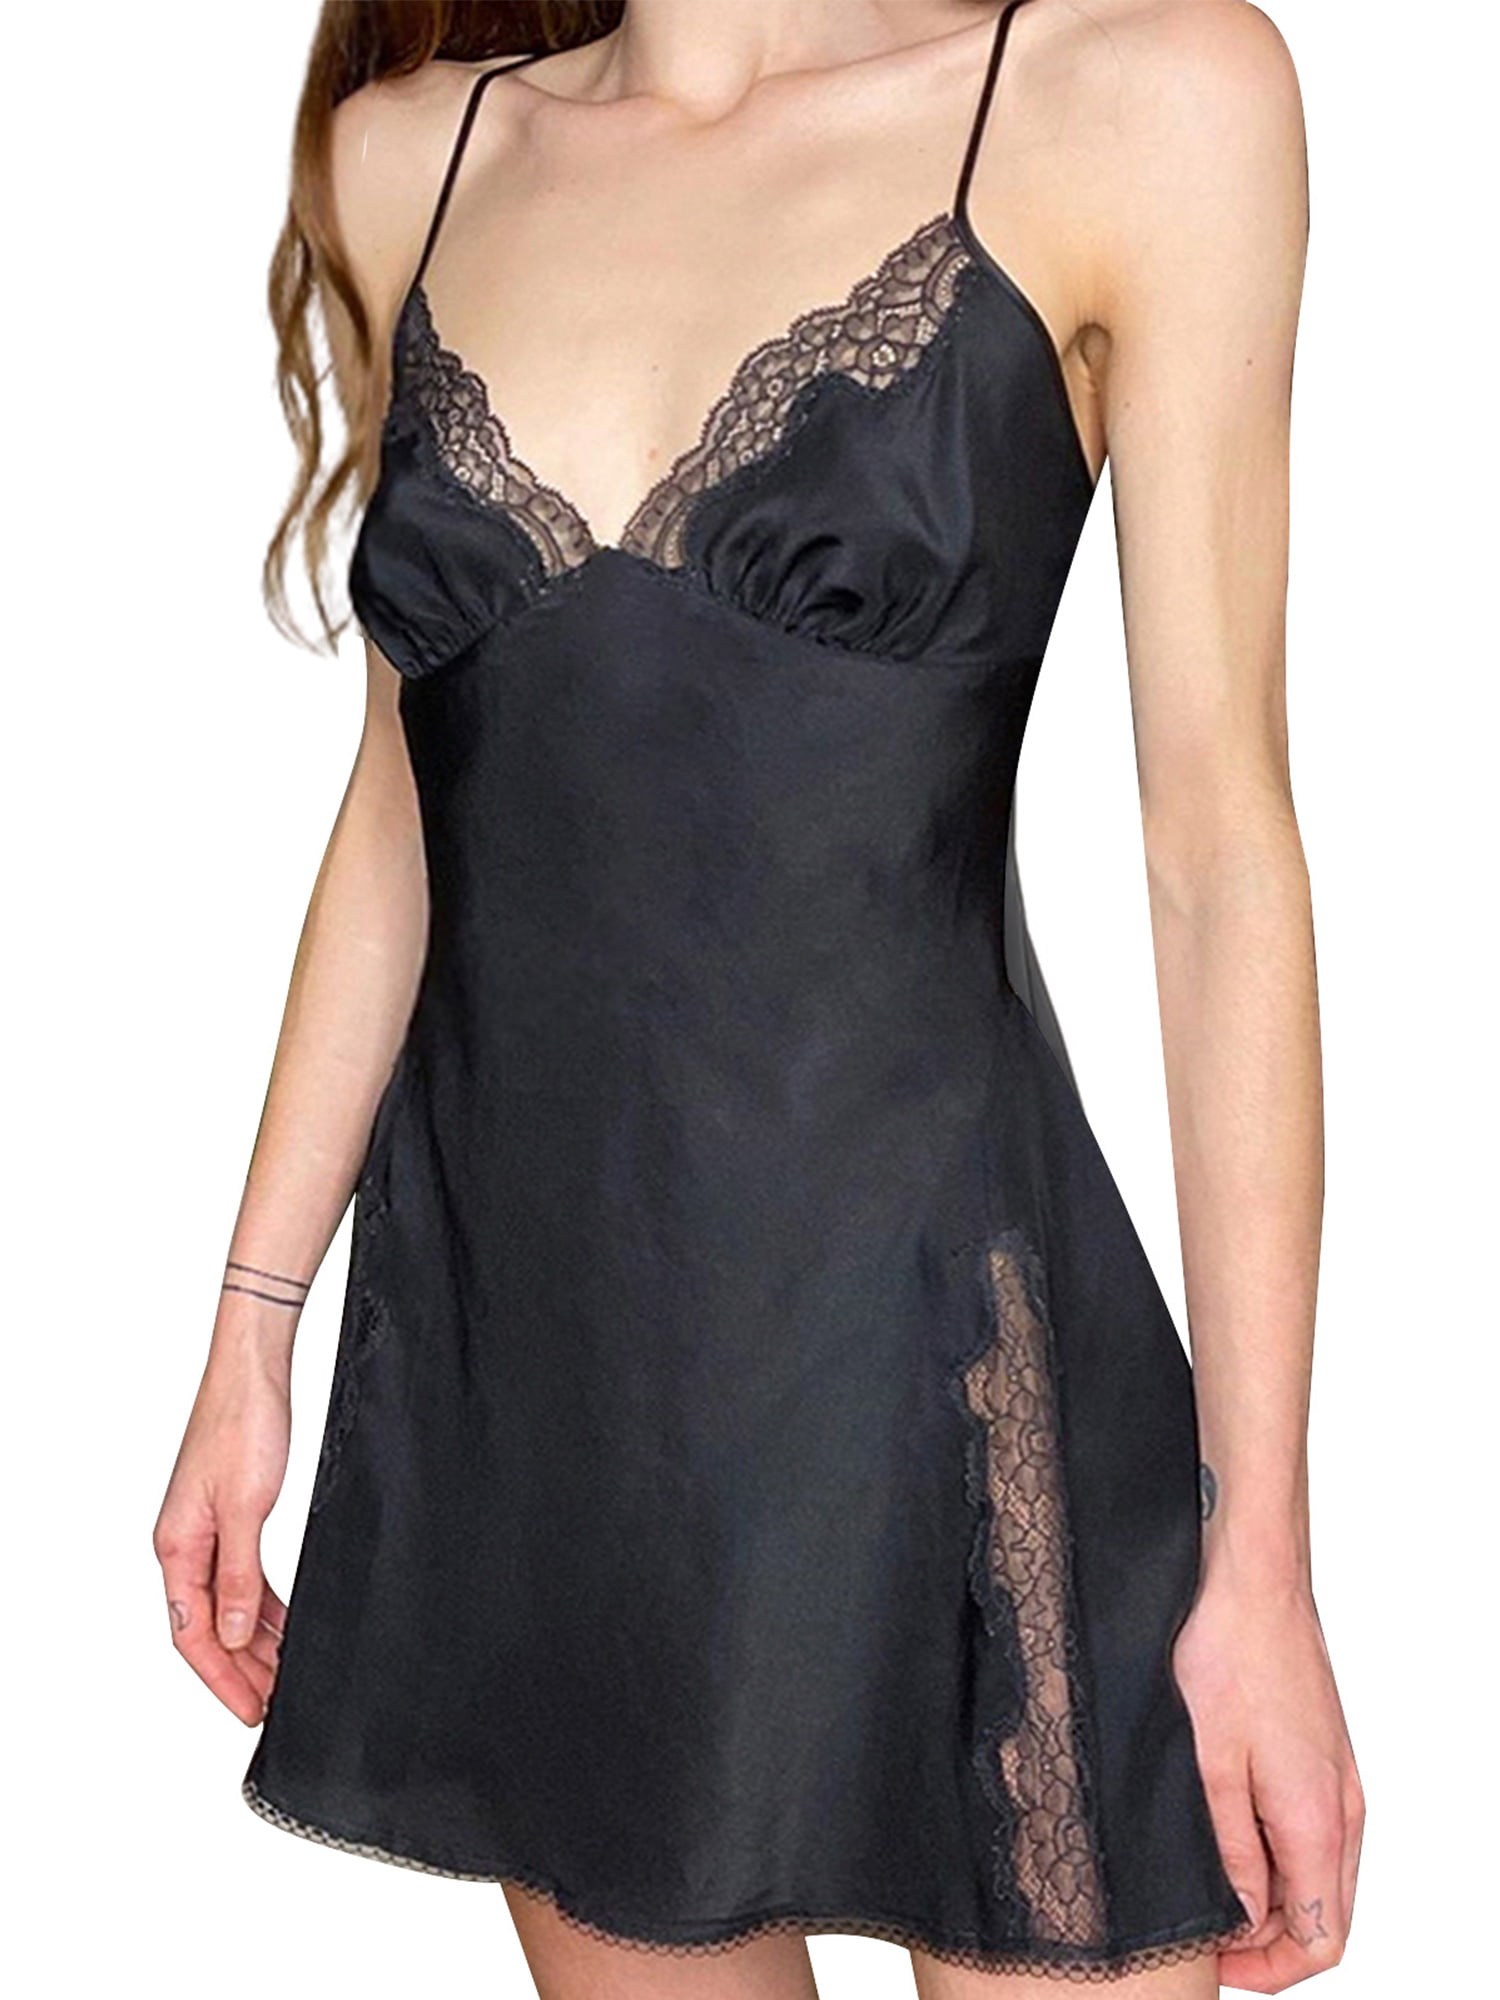 Women Sling Nightwear Lace Dress Sleepwear Deep V-Neck Mesh Backless Mini Dress Nightgowns